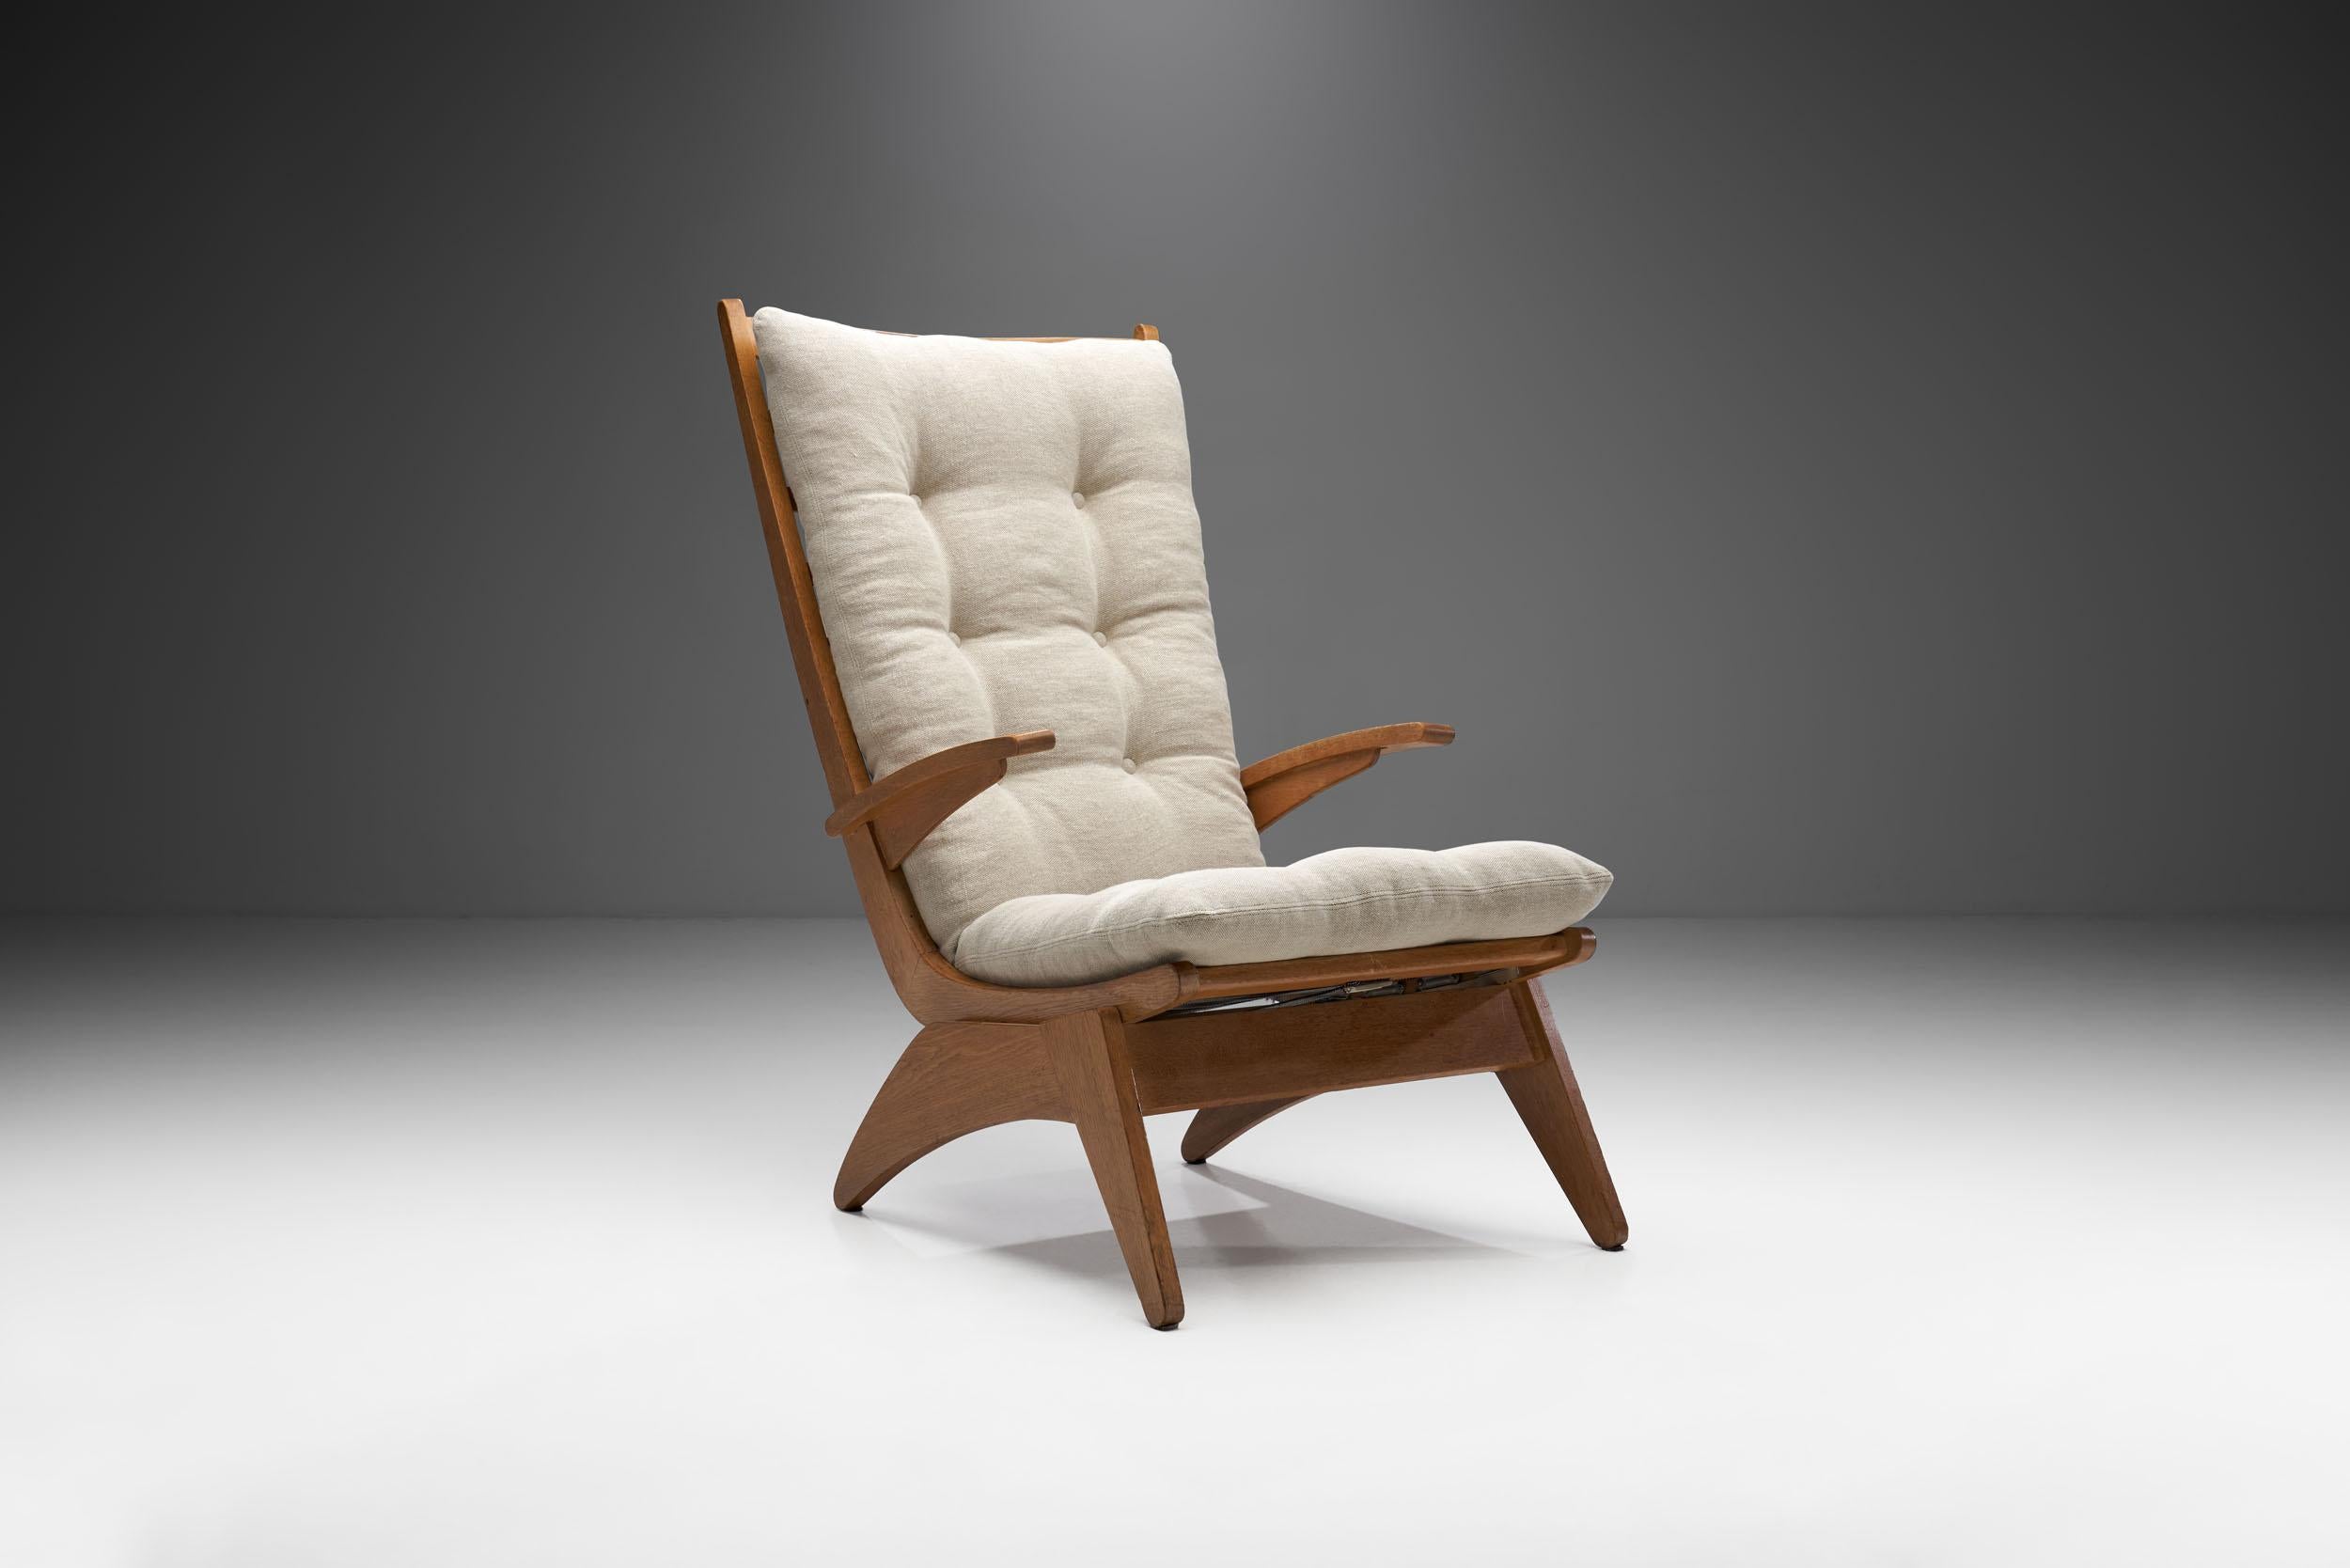 Dieser Sessel ist ein frühes und seltenes Exemplar des niederländischen Modernismus. Das Gestell ist durch schräge, geneigte Linien gekennzeichnet, die dem Stuhl eine besondere Form verleihen. Jan den Drijver entwarf dieses Modell im Jahr